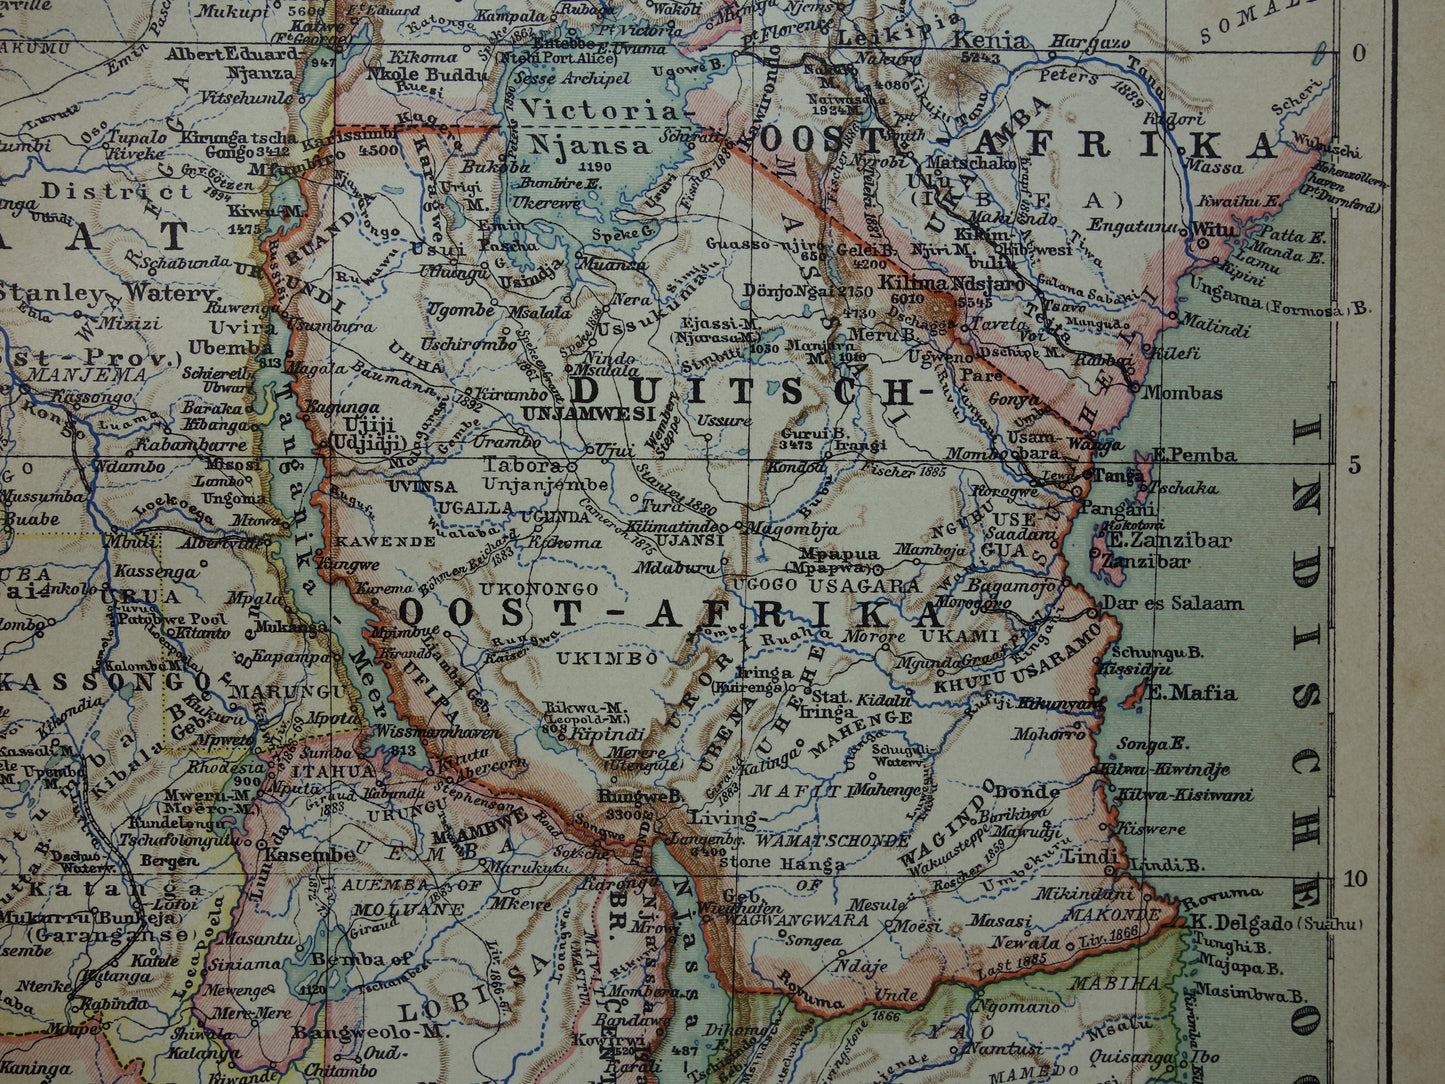 Oude kaart van Centraal Afrika uit 1905 originele landkaart van Midden-Afrika Kongo Angola Tanzania historische vintage print